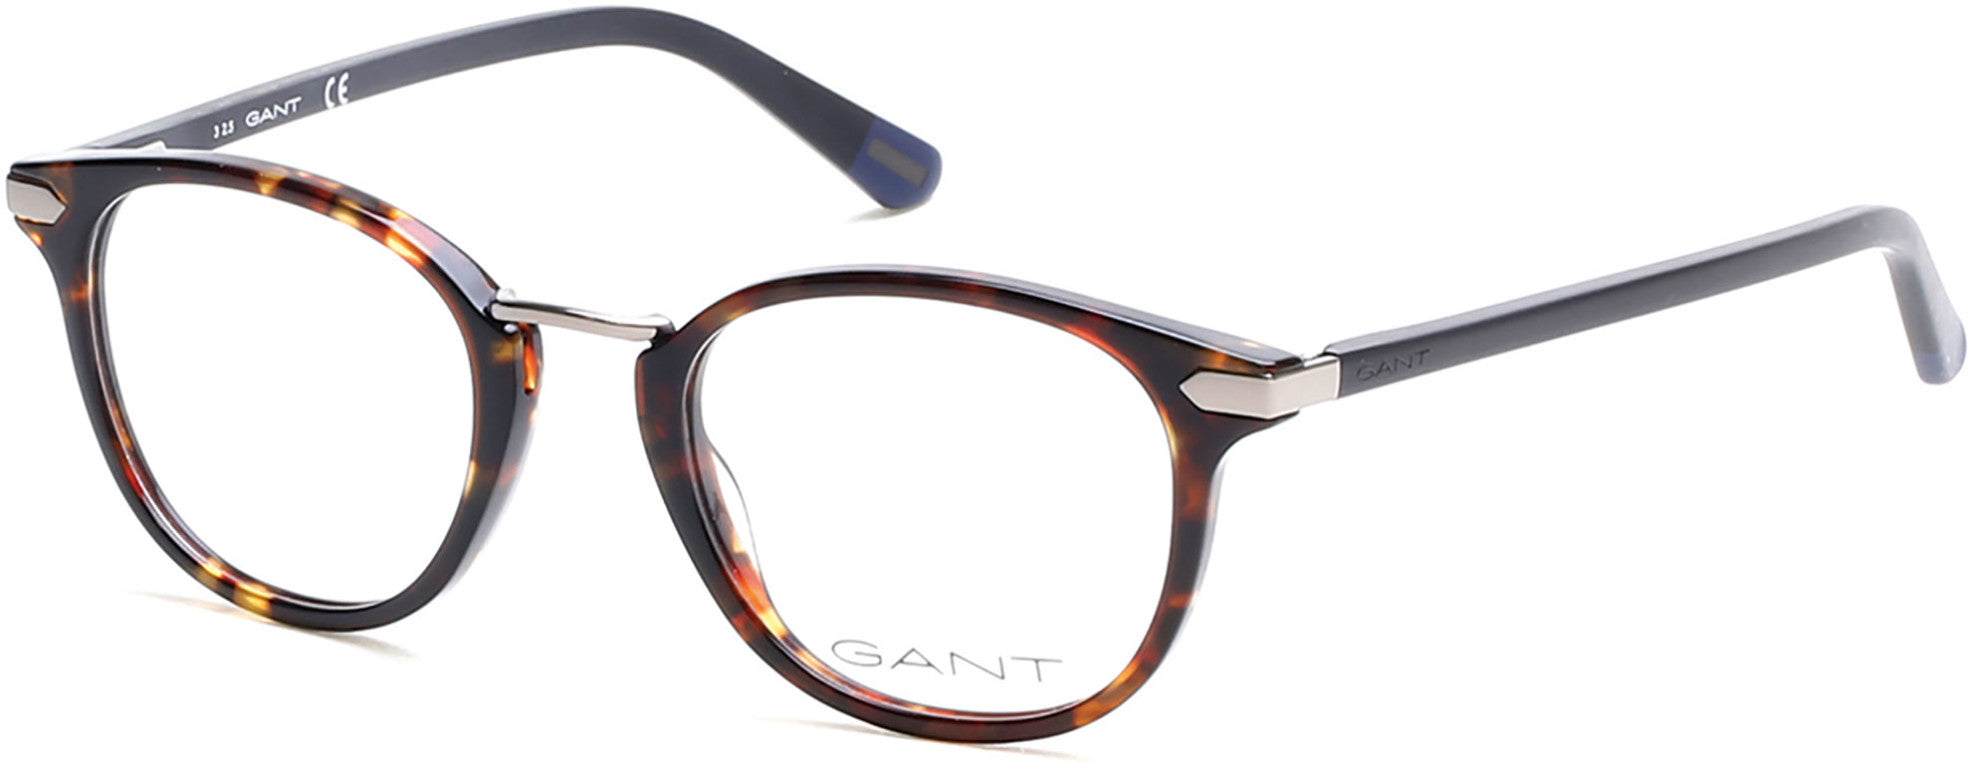 Gant GA3115 Round Eyeglasses 052-052 - Dark Havana